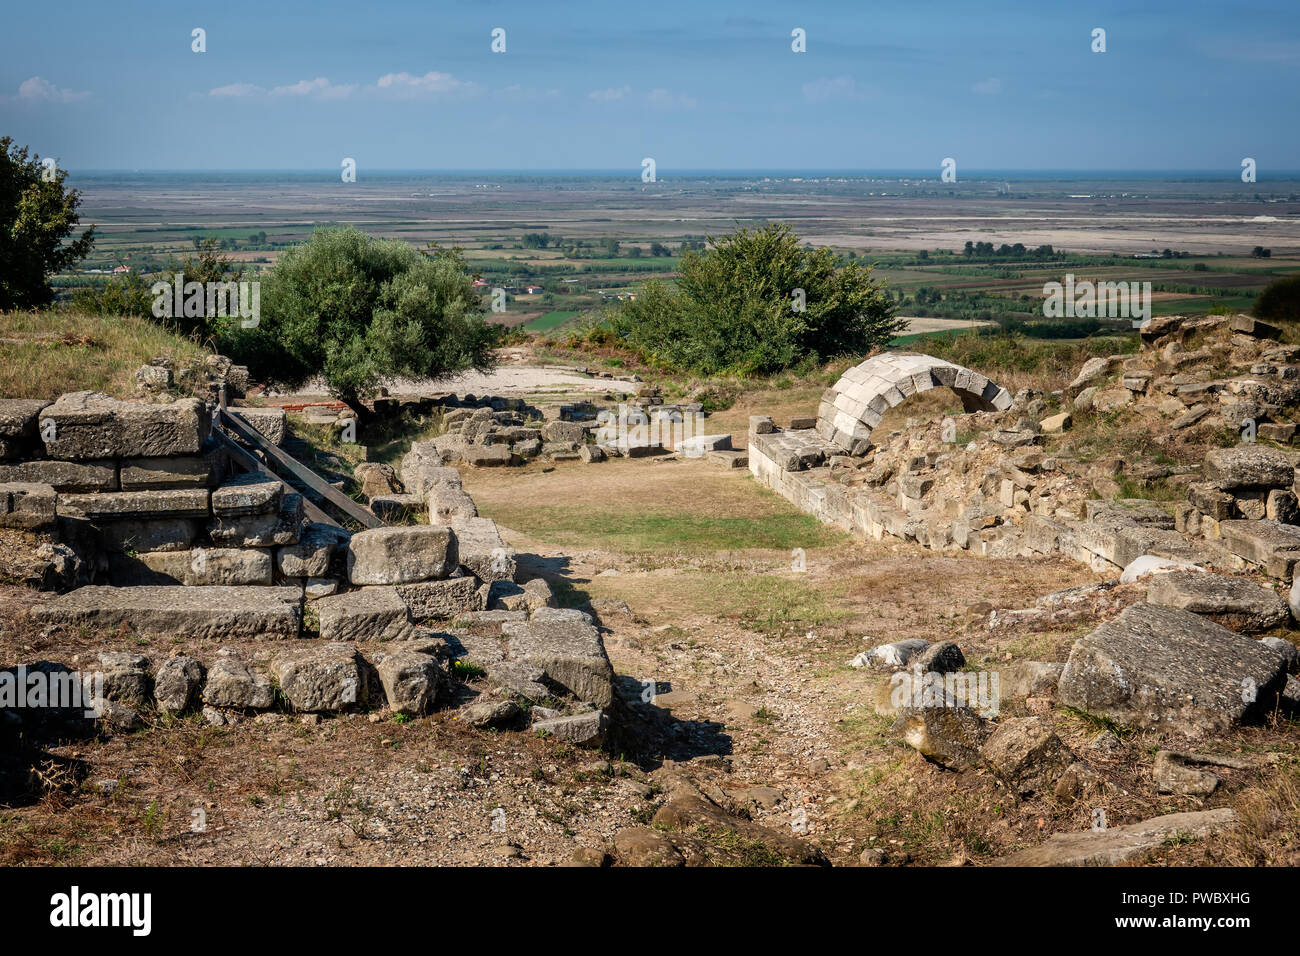 Tempio e teatro della città antica di Apollonia, Albania Foto Stock